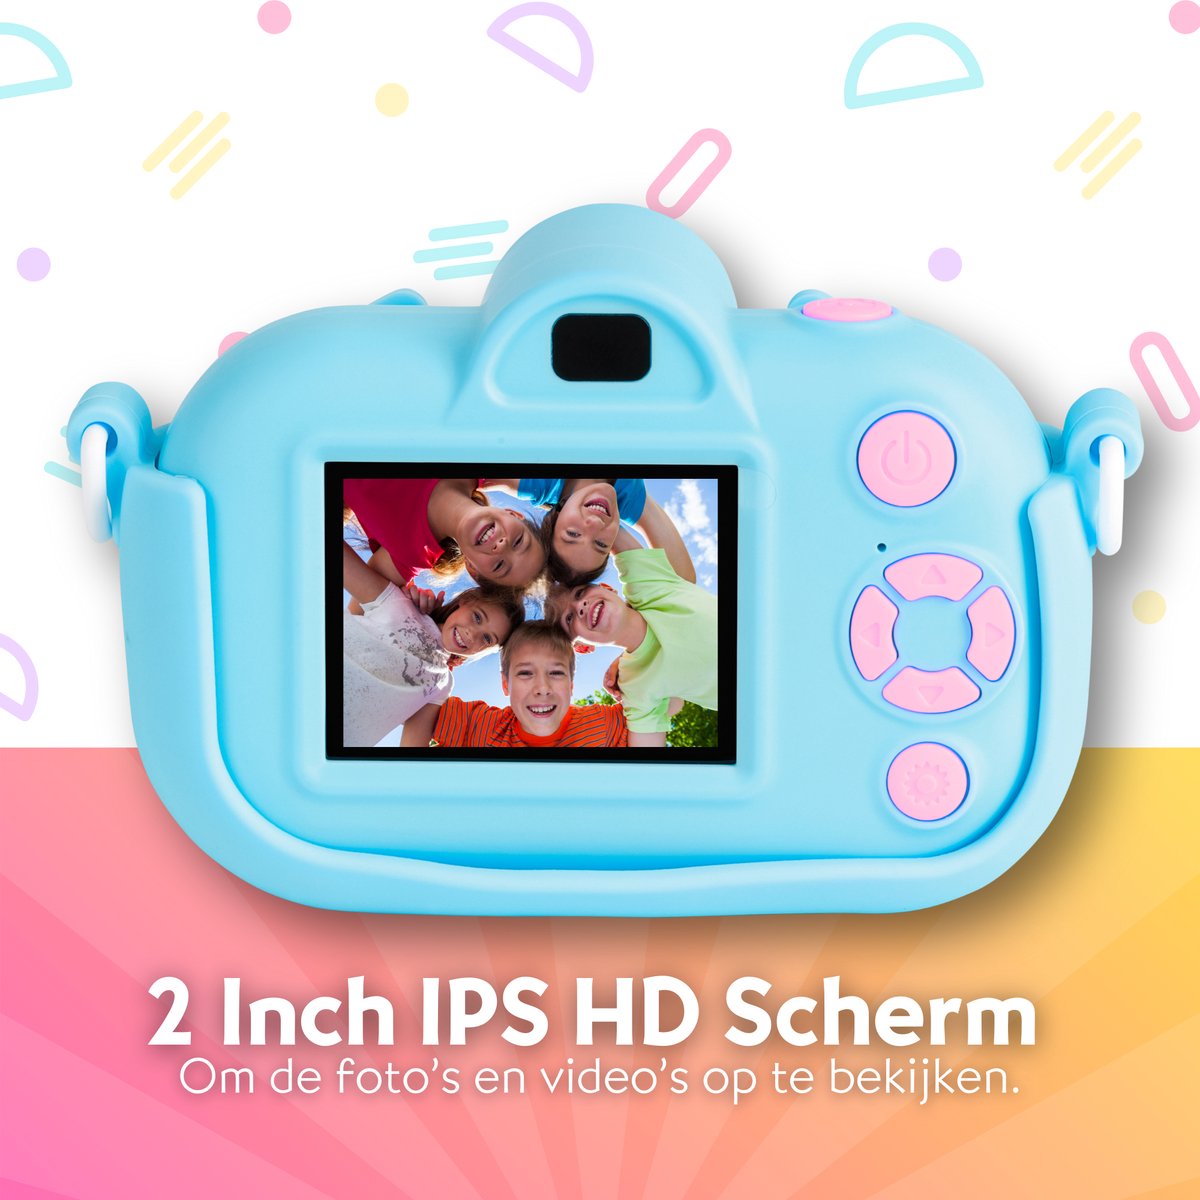 Appareil photo numérique pour enfants Vitasy Pro - HD 1080p - Blauw -  Appareil photo